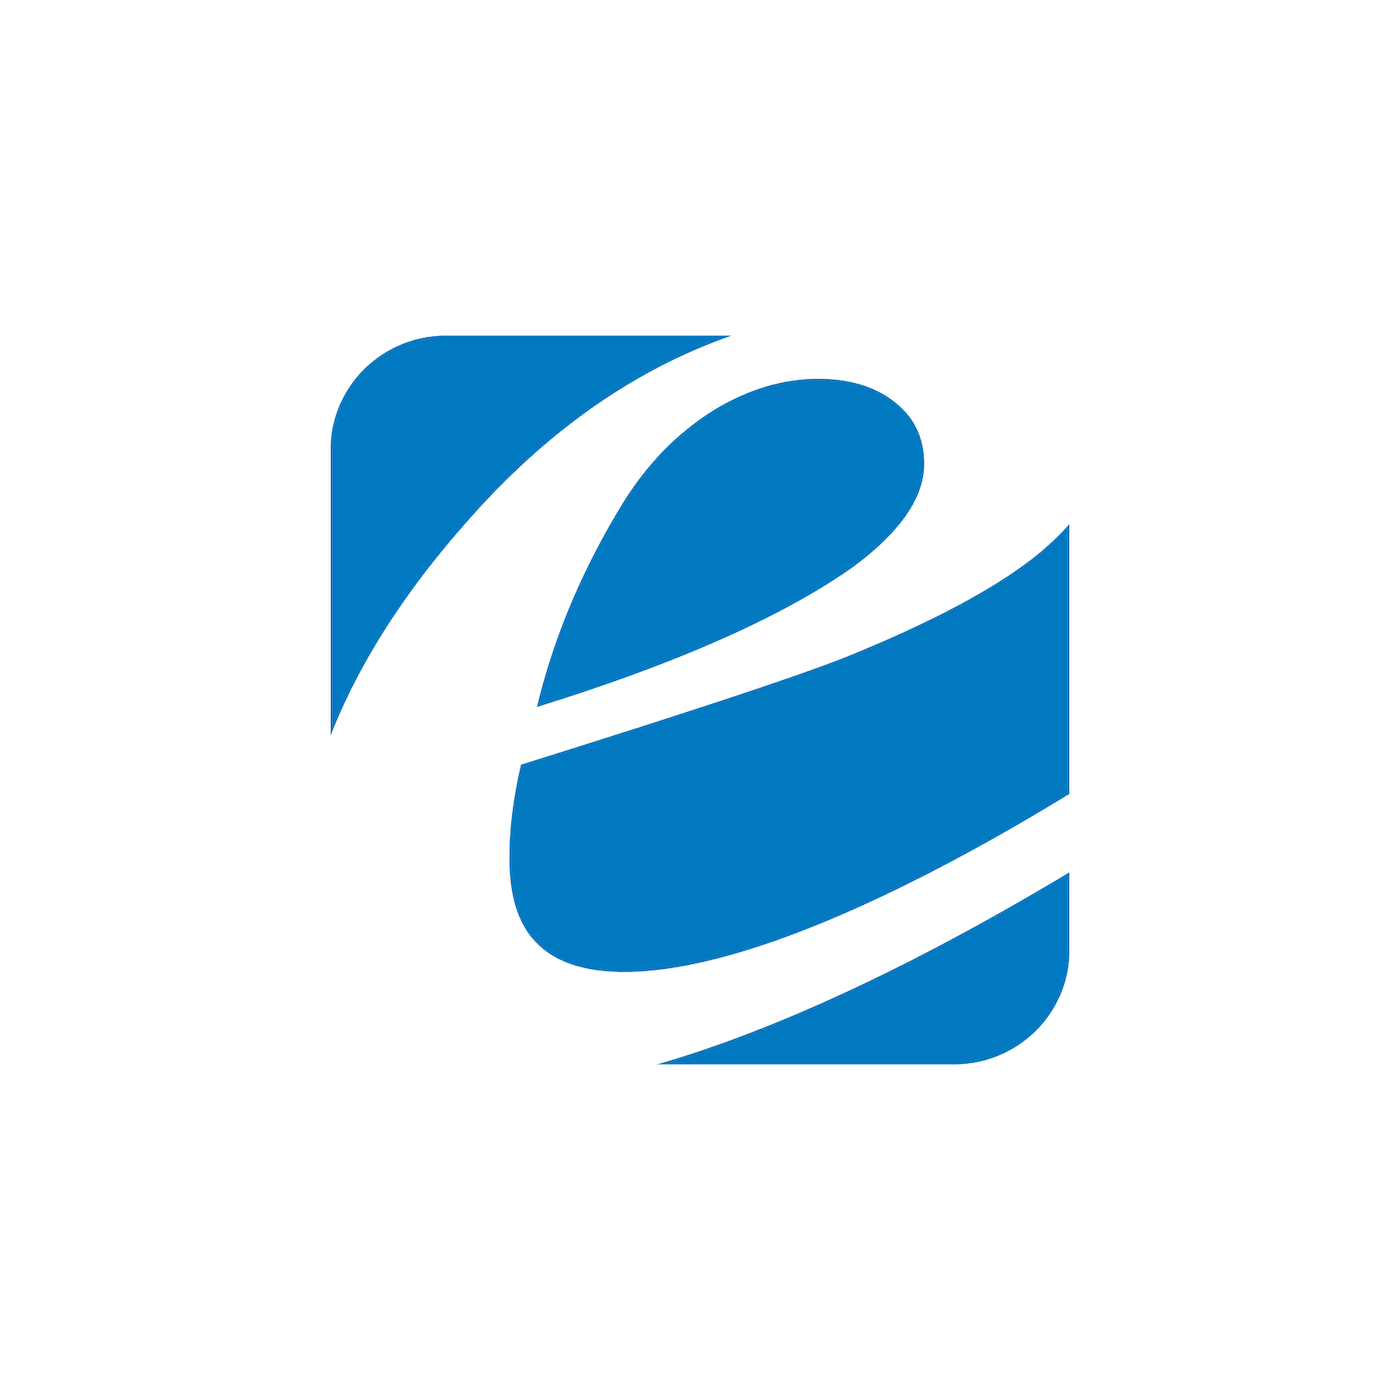 Efinity Logo